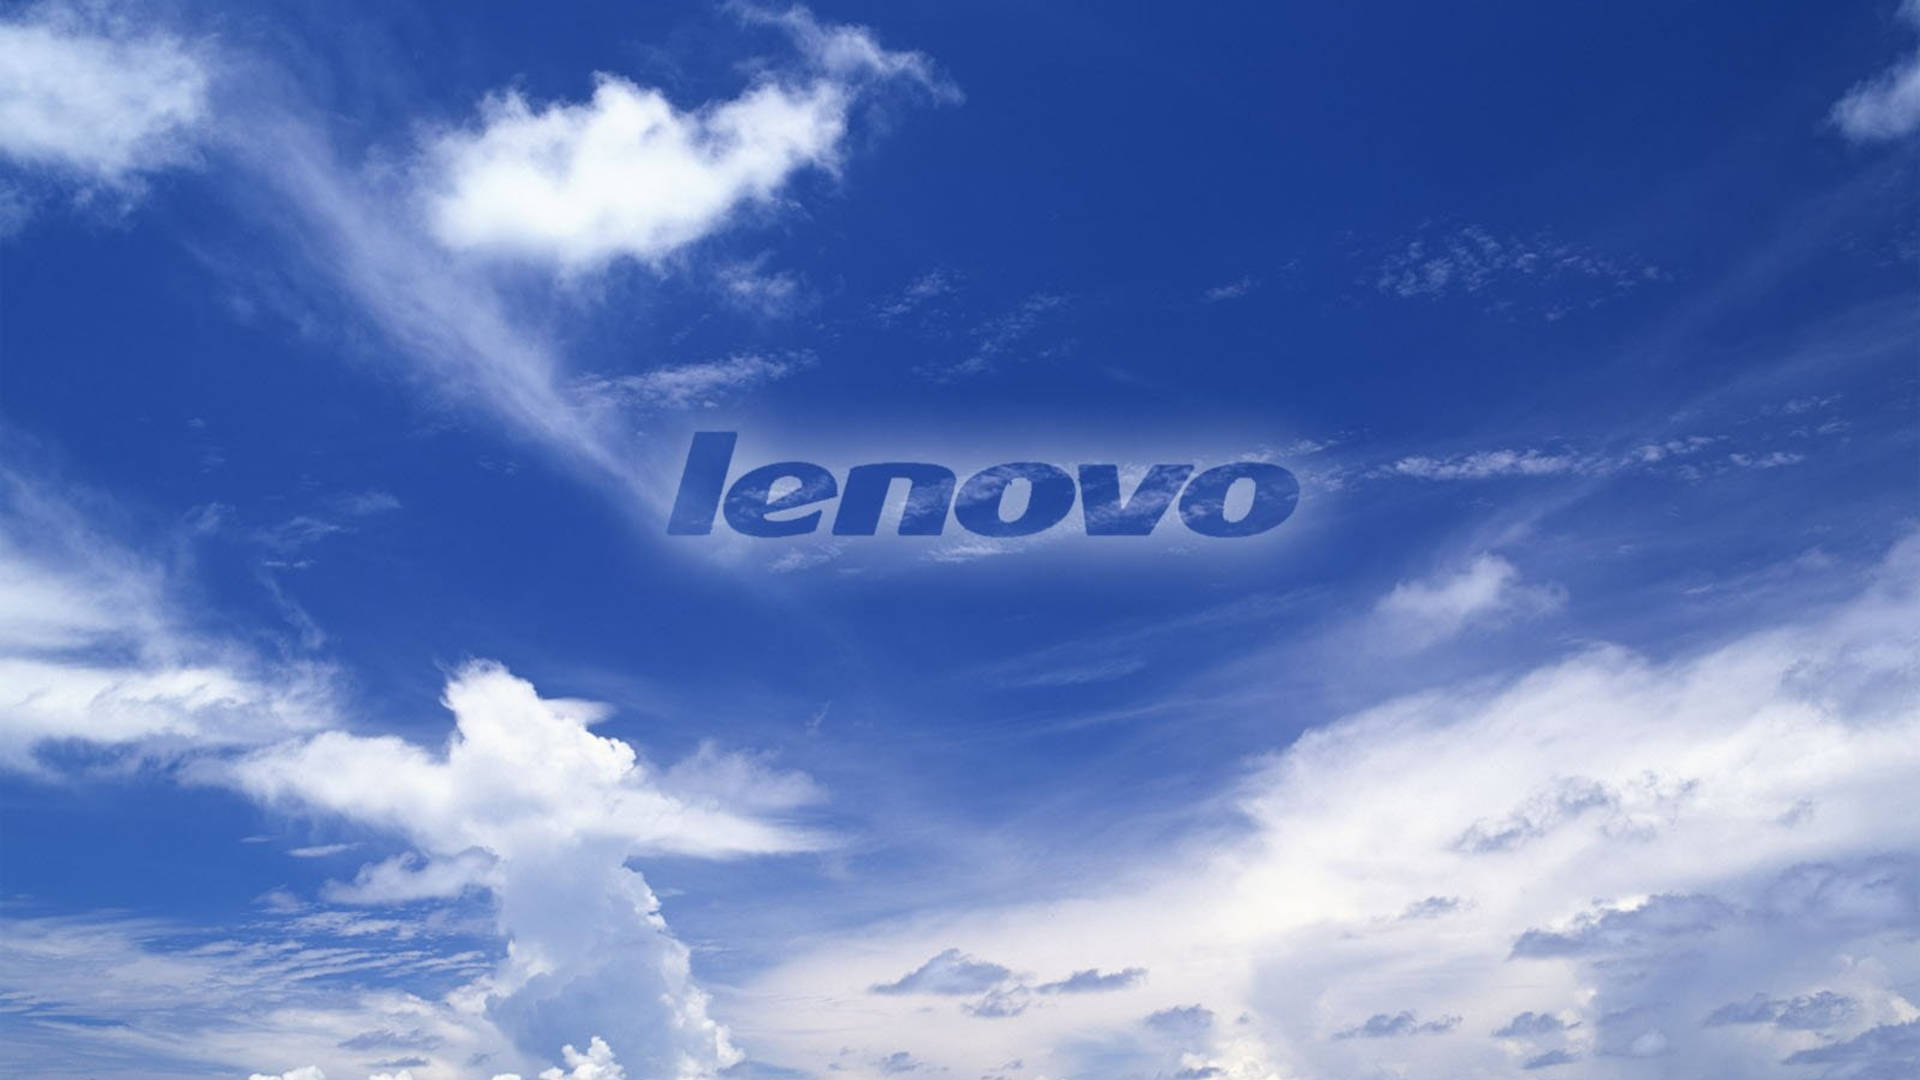 Cielonublado Azul - Lenovo Oficial. Fondo de pantalla